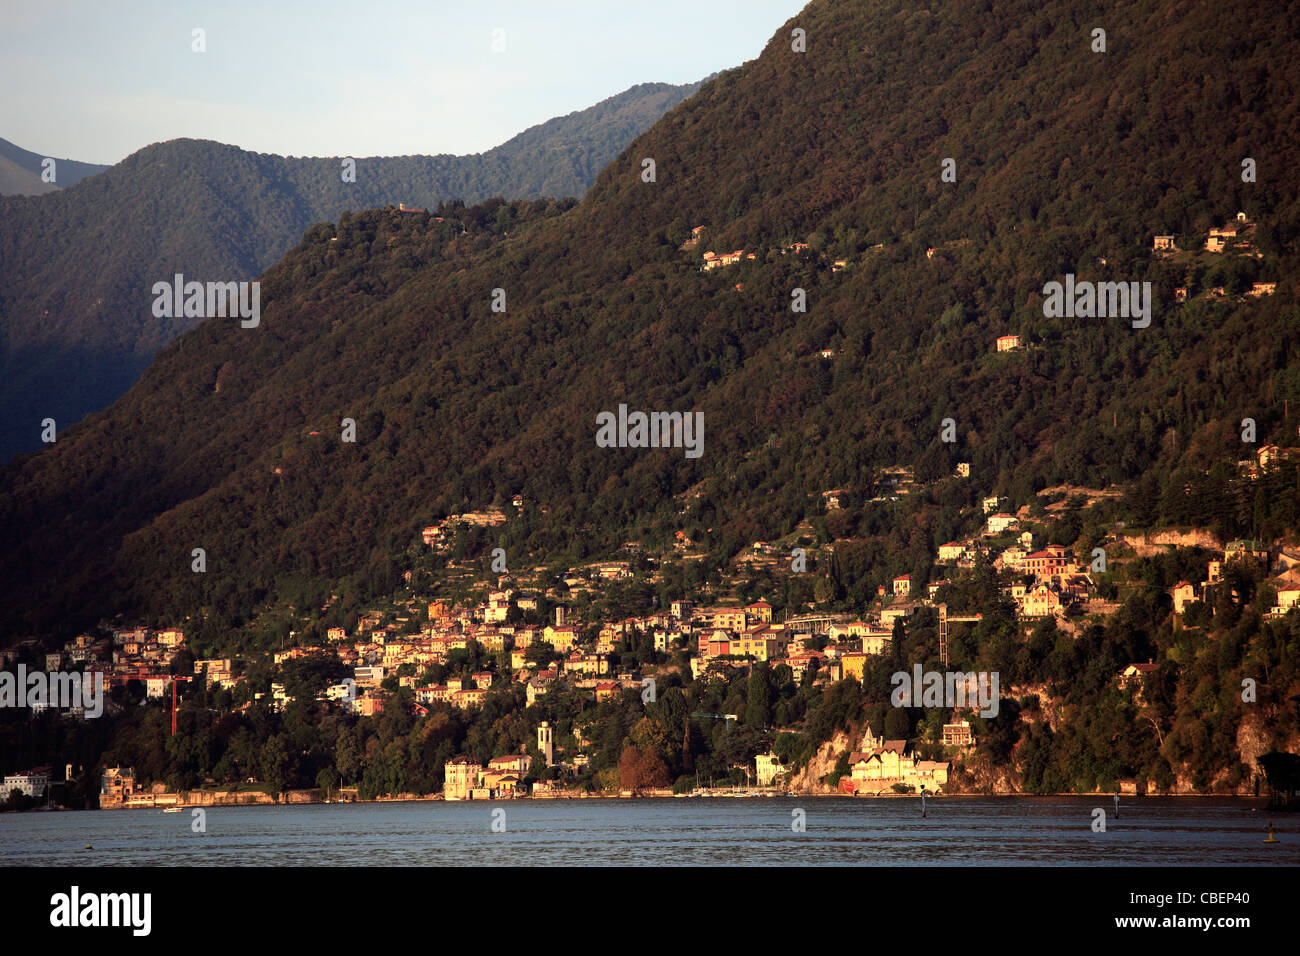 Italy, Lombardy, Lake Como, Stock Photo